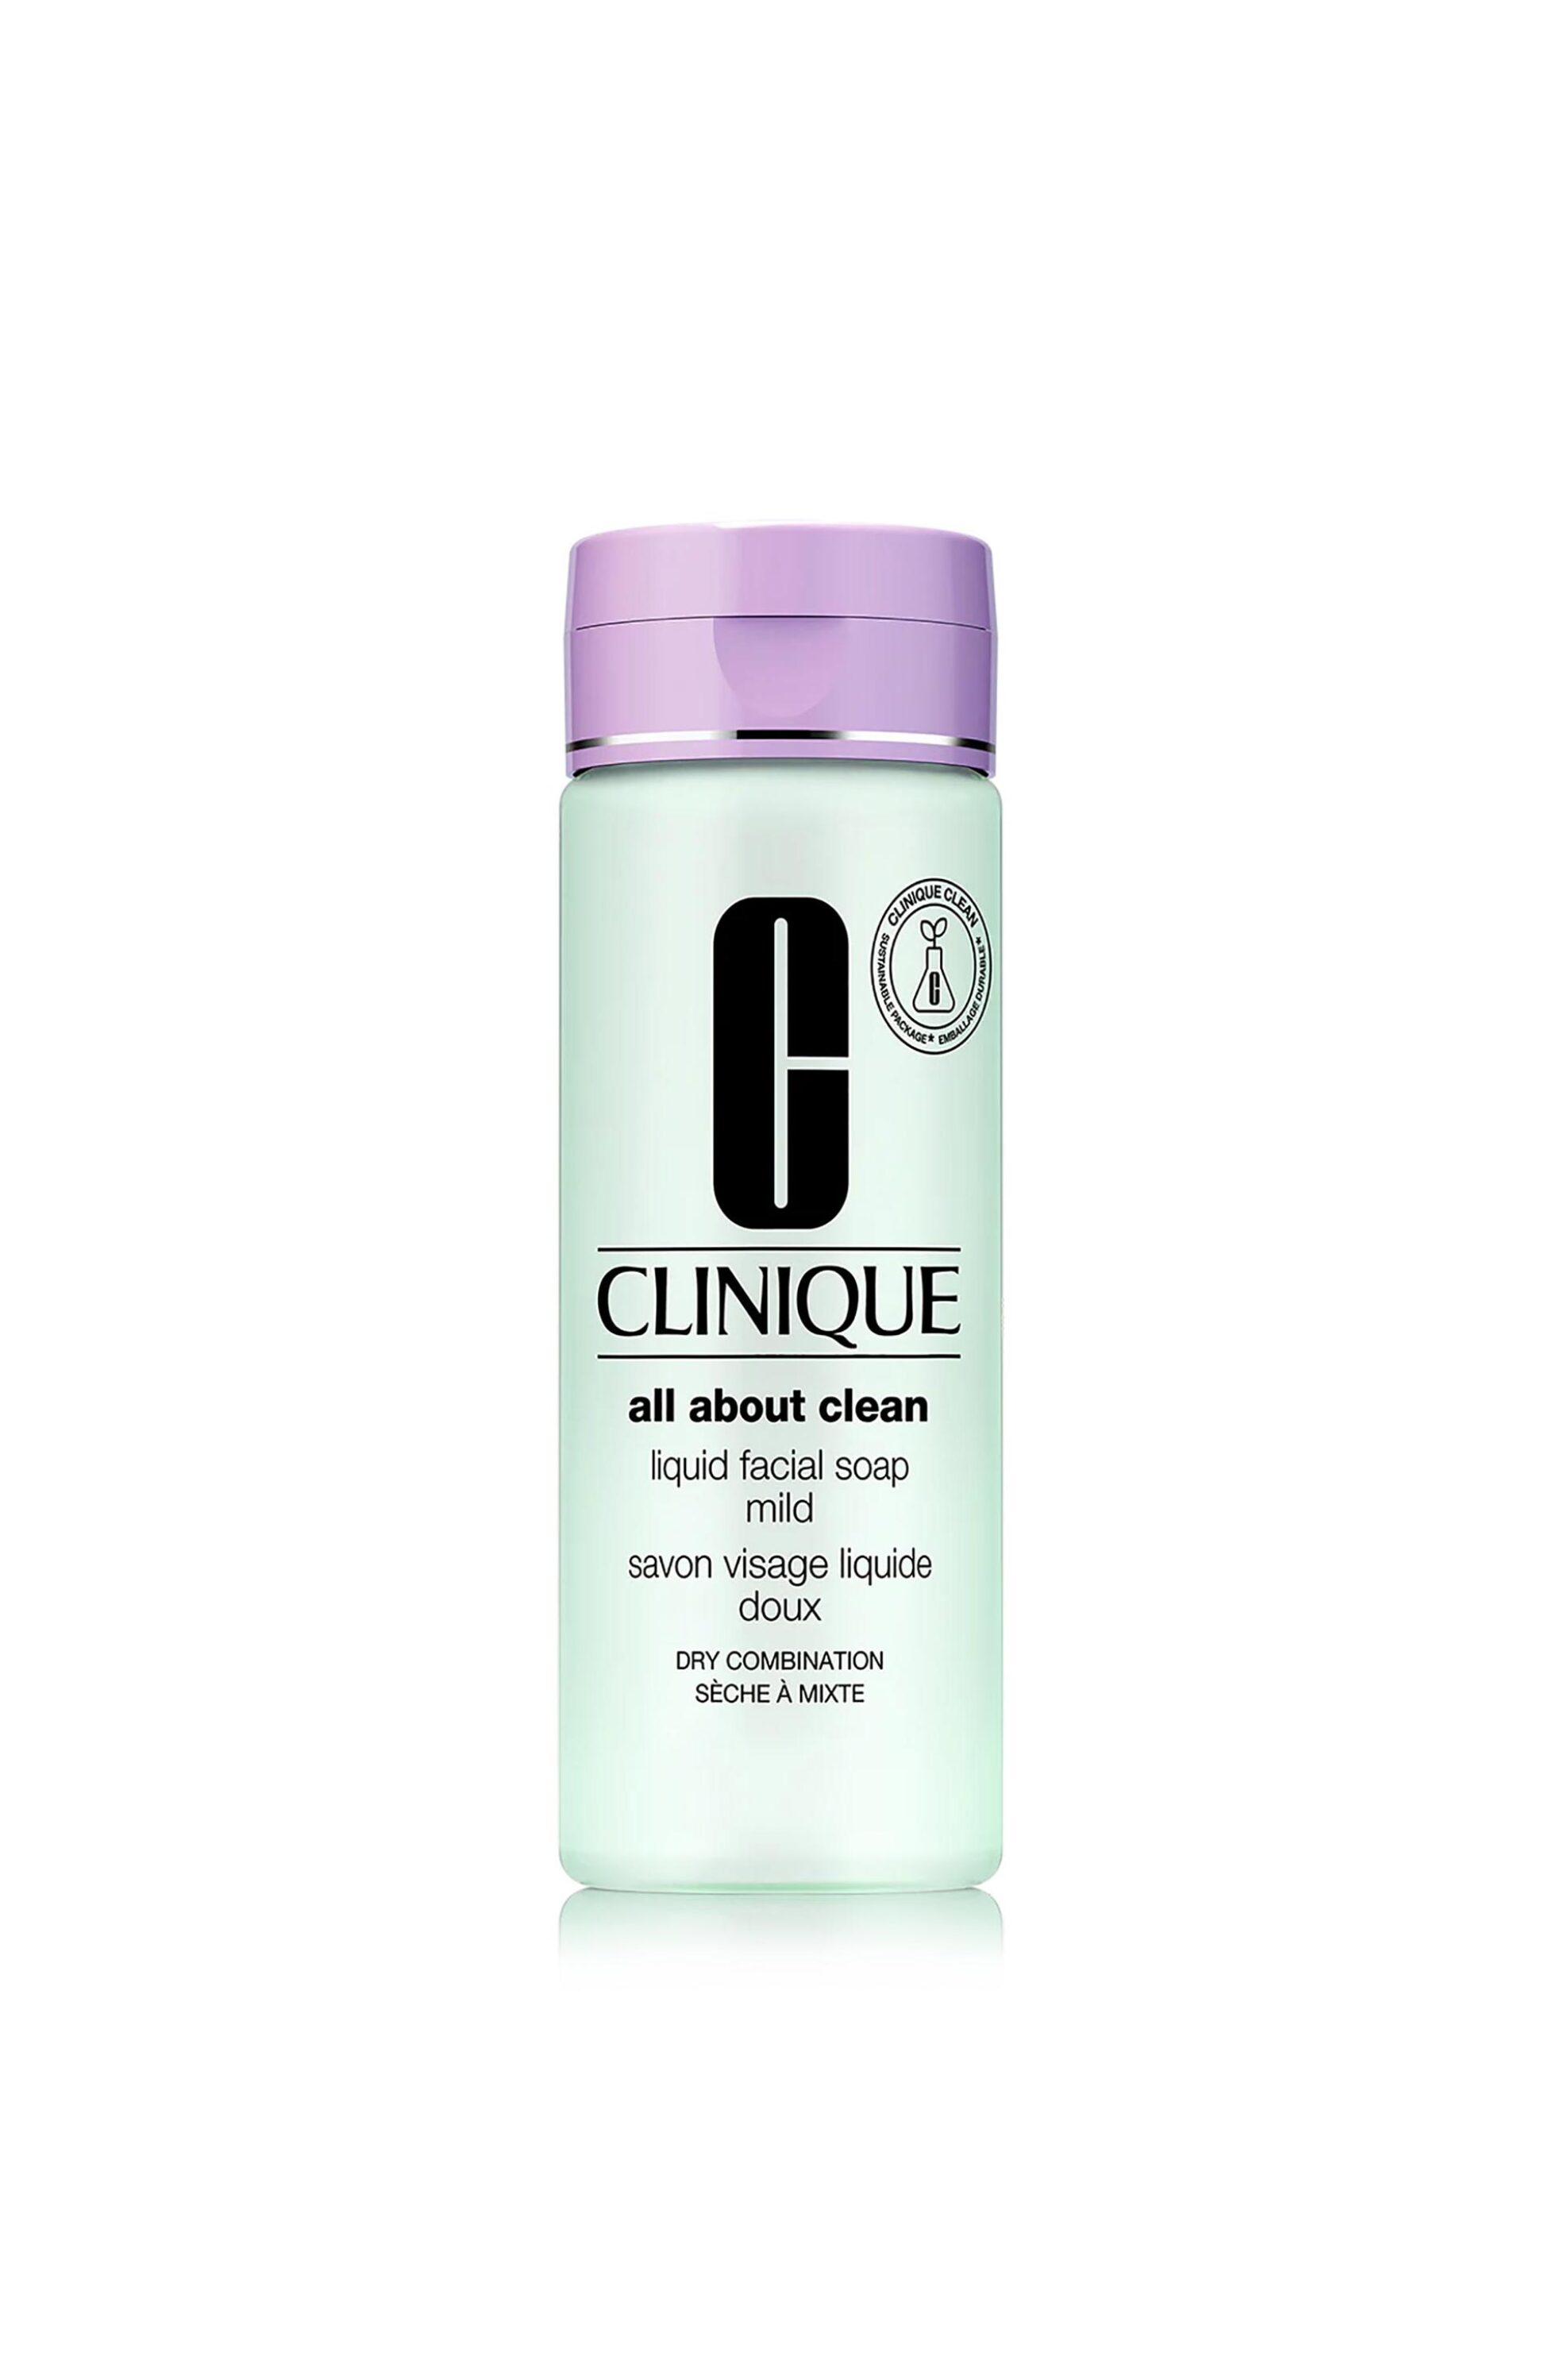 Clinique Liquid Facial Soap Mild 200 ml - 6F37010000 980207500020